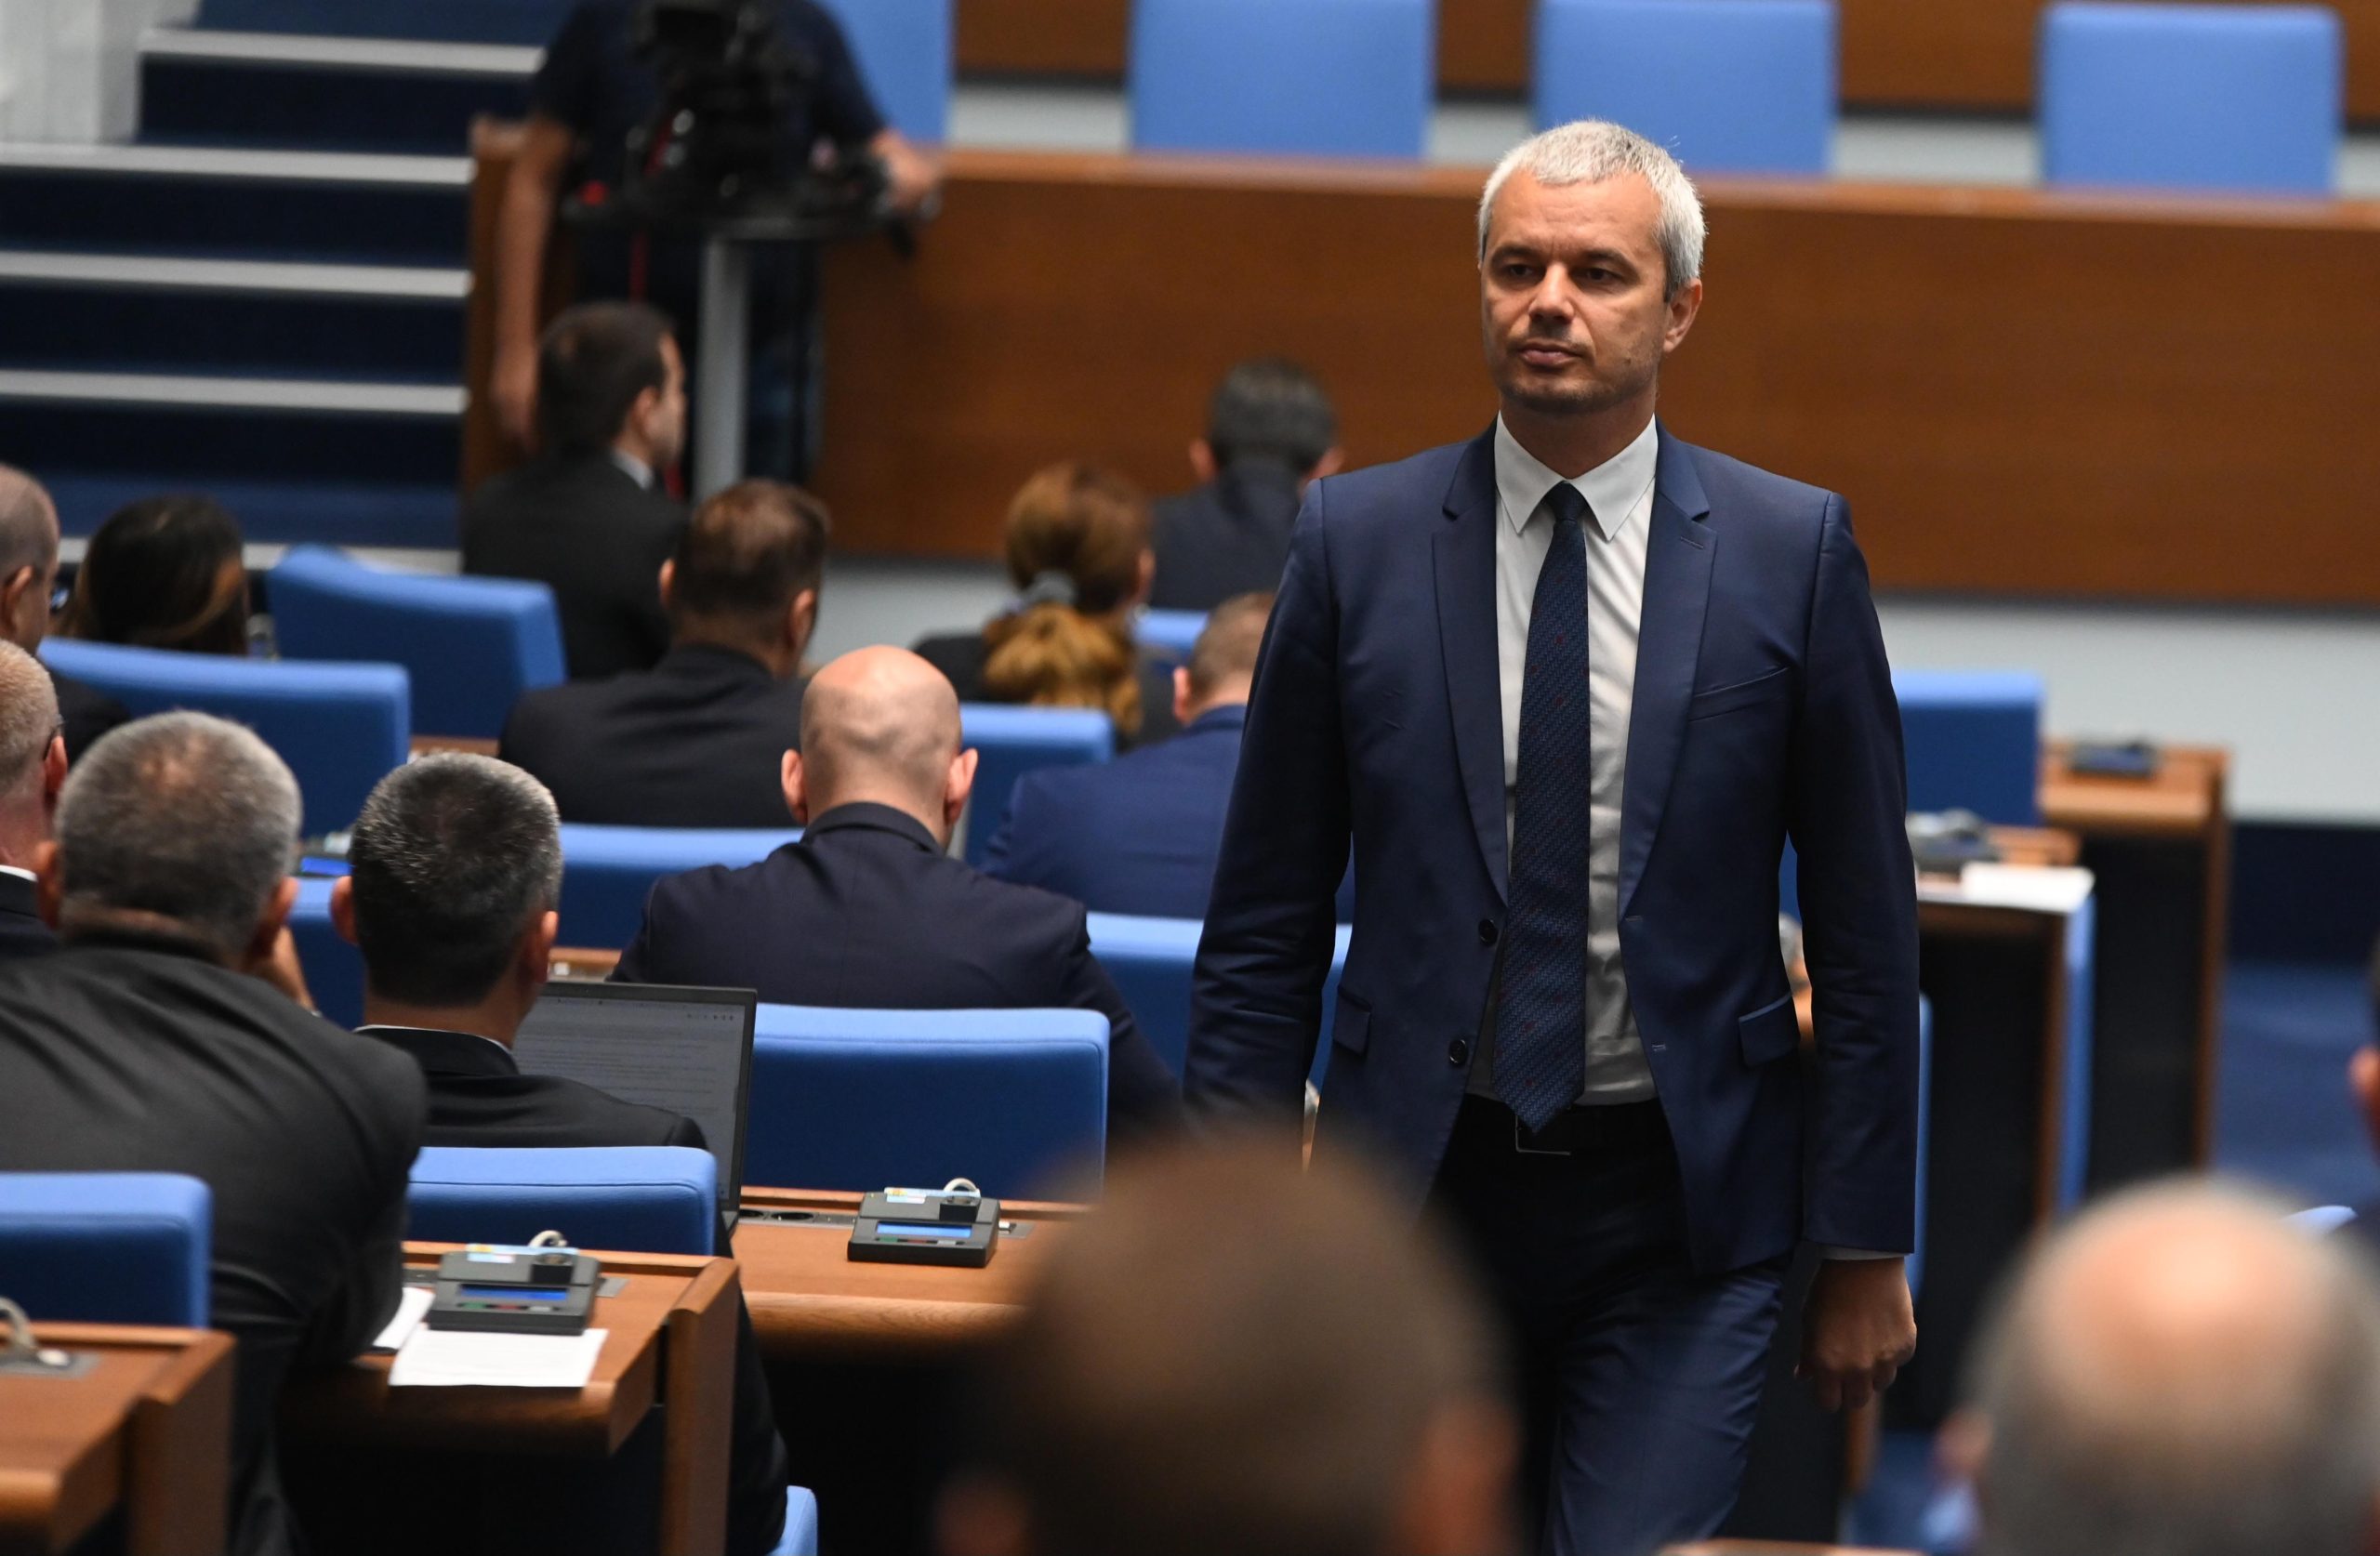 Депутатът от Продължаваме промяната – Демократична България Явор Божанков заяви